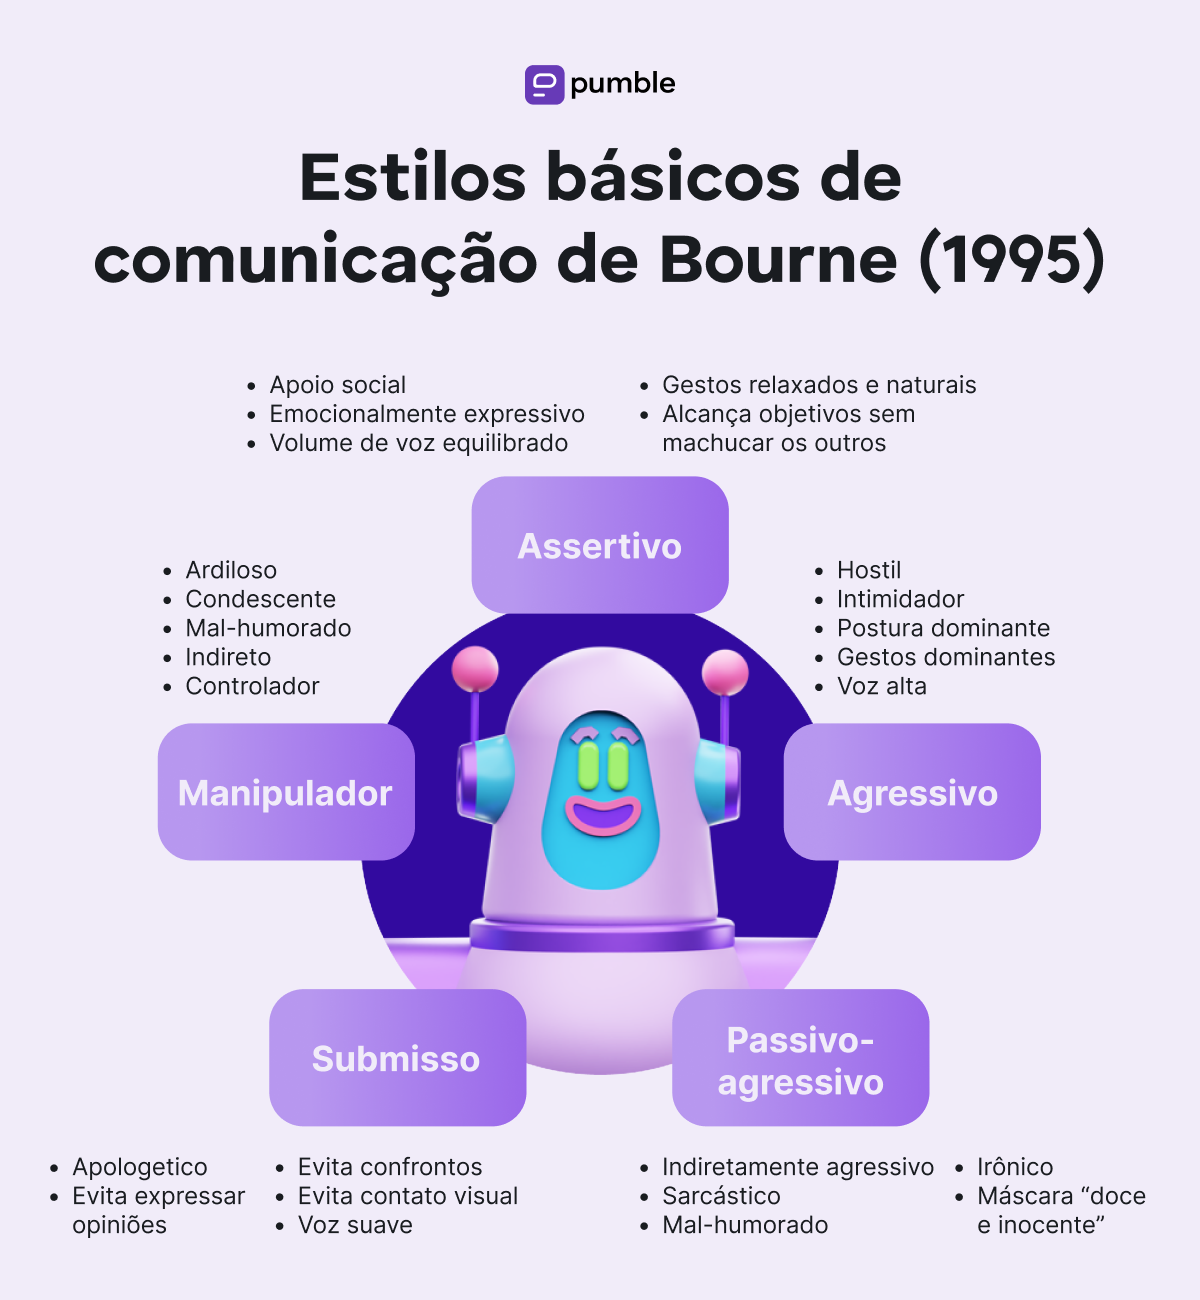 Estilos de comunicação Bourne (1995)